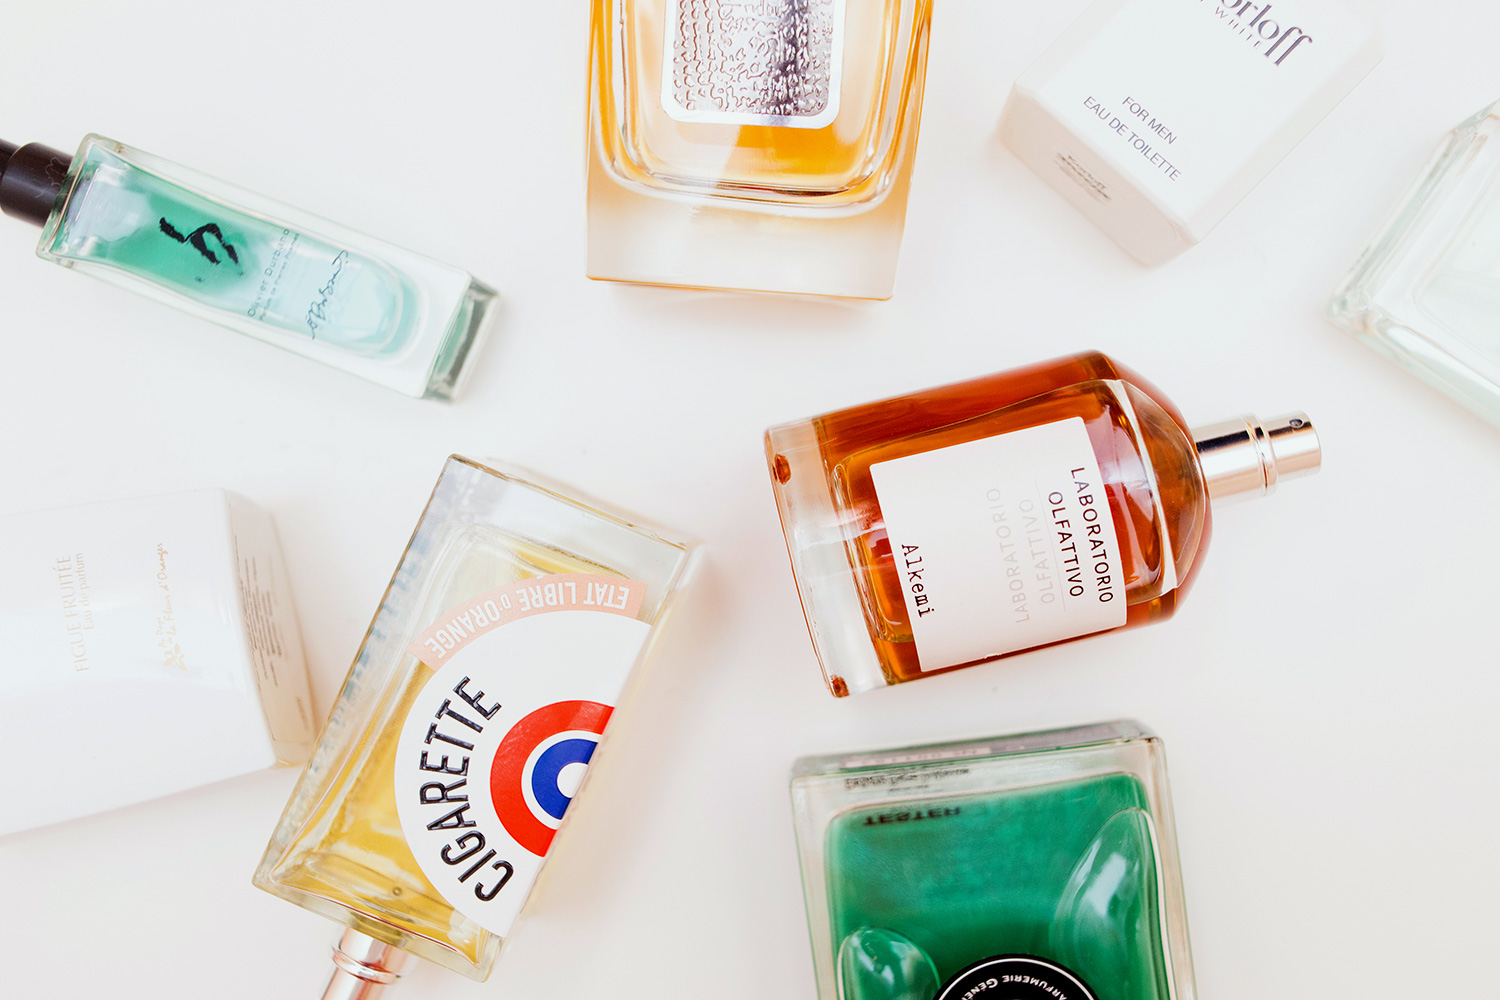 Селективная парфюмерия — что это значит? бренды нишевых ароматов и отливанты